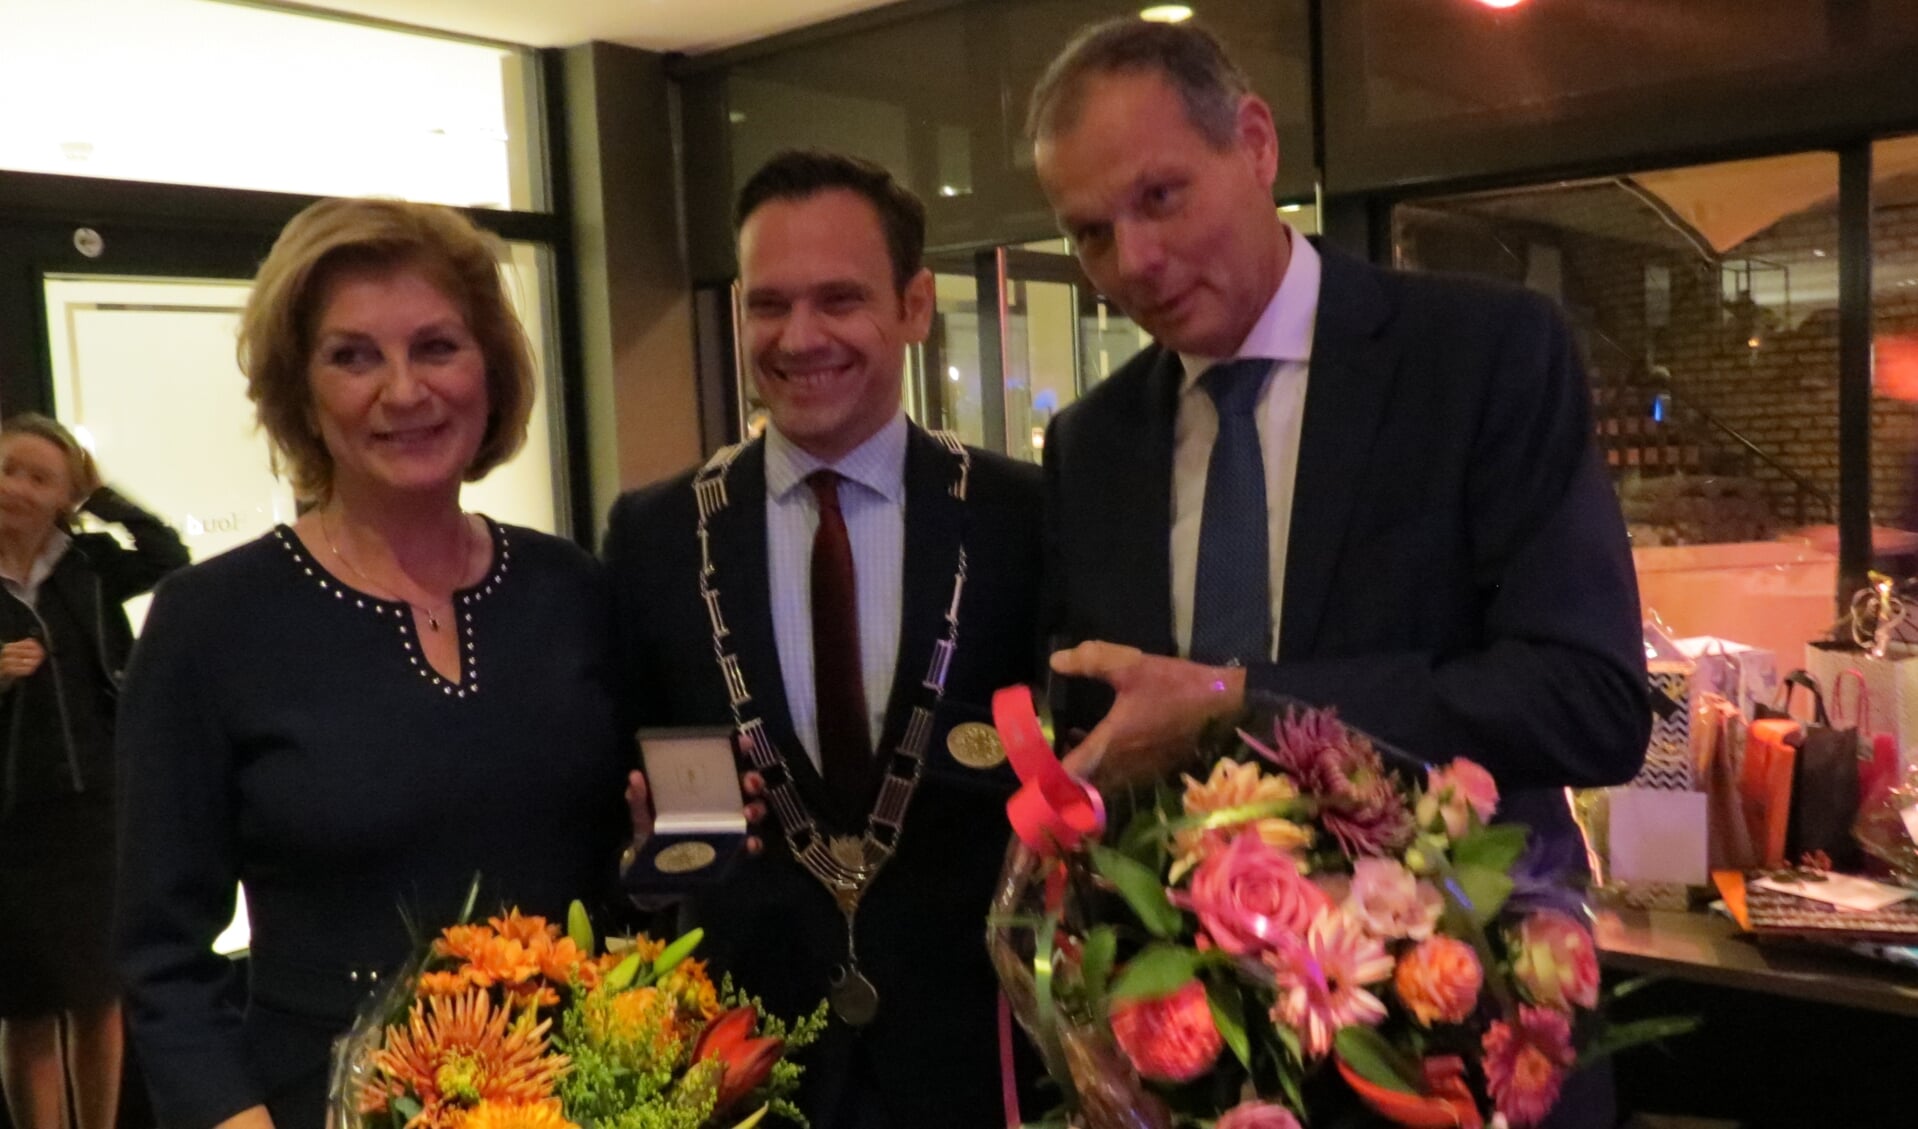 De burgemeester reikt de Chapeaupenning uit aan het echtpaar Van der Valk.